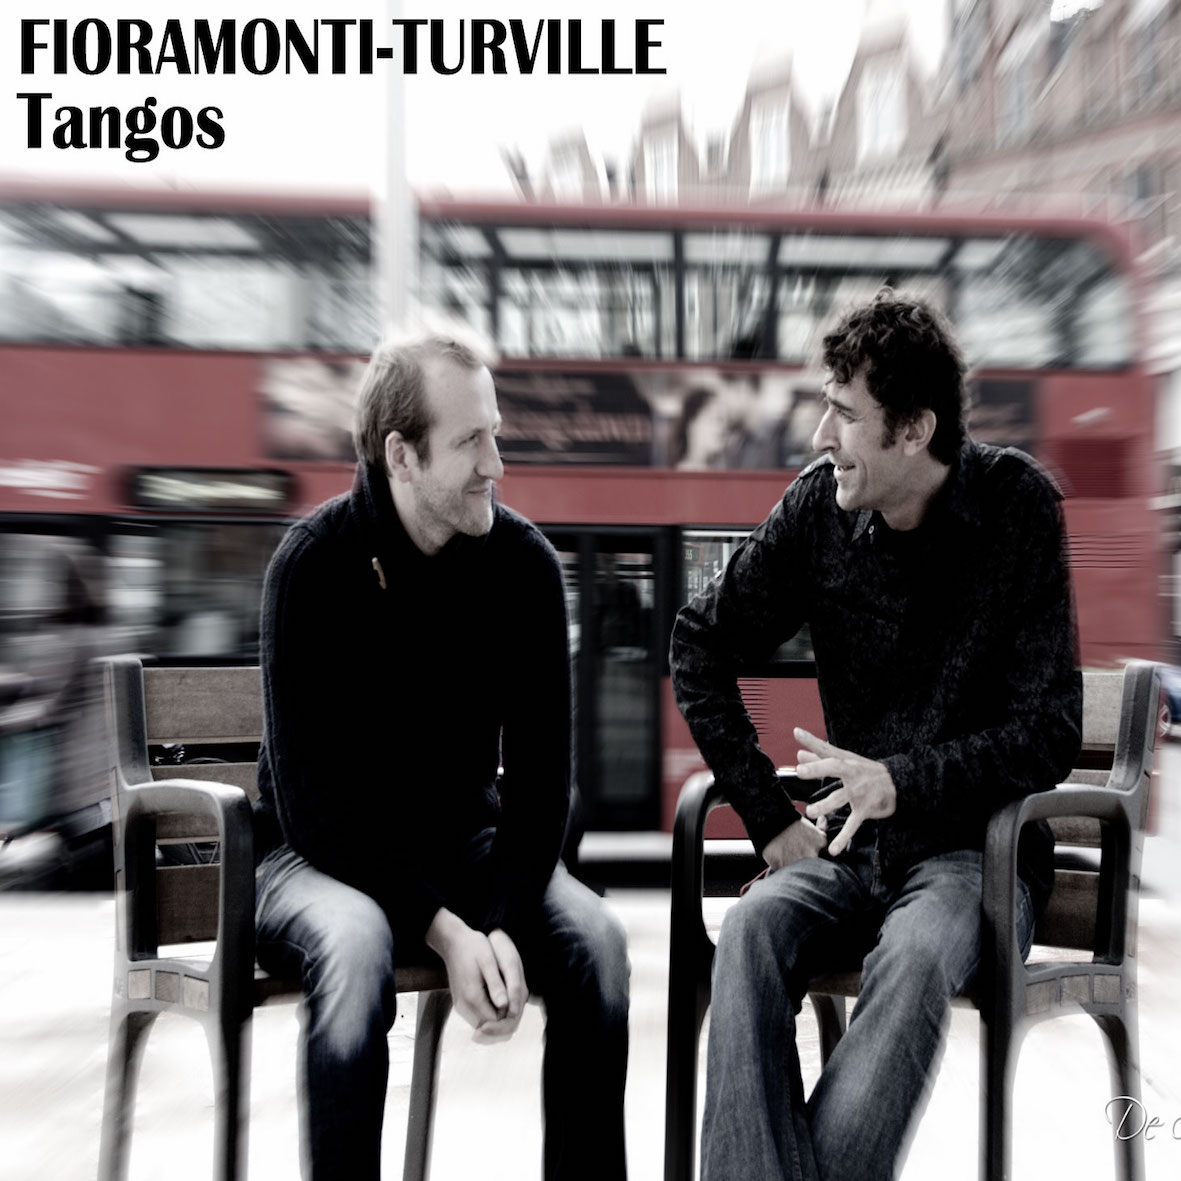 Turville-Fioramonti